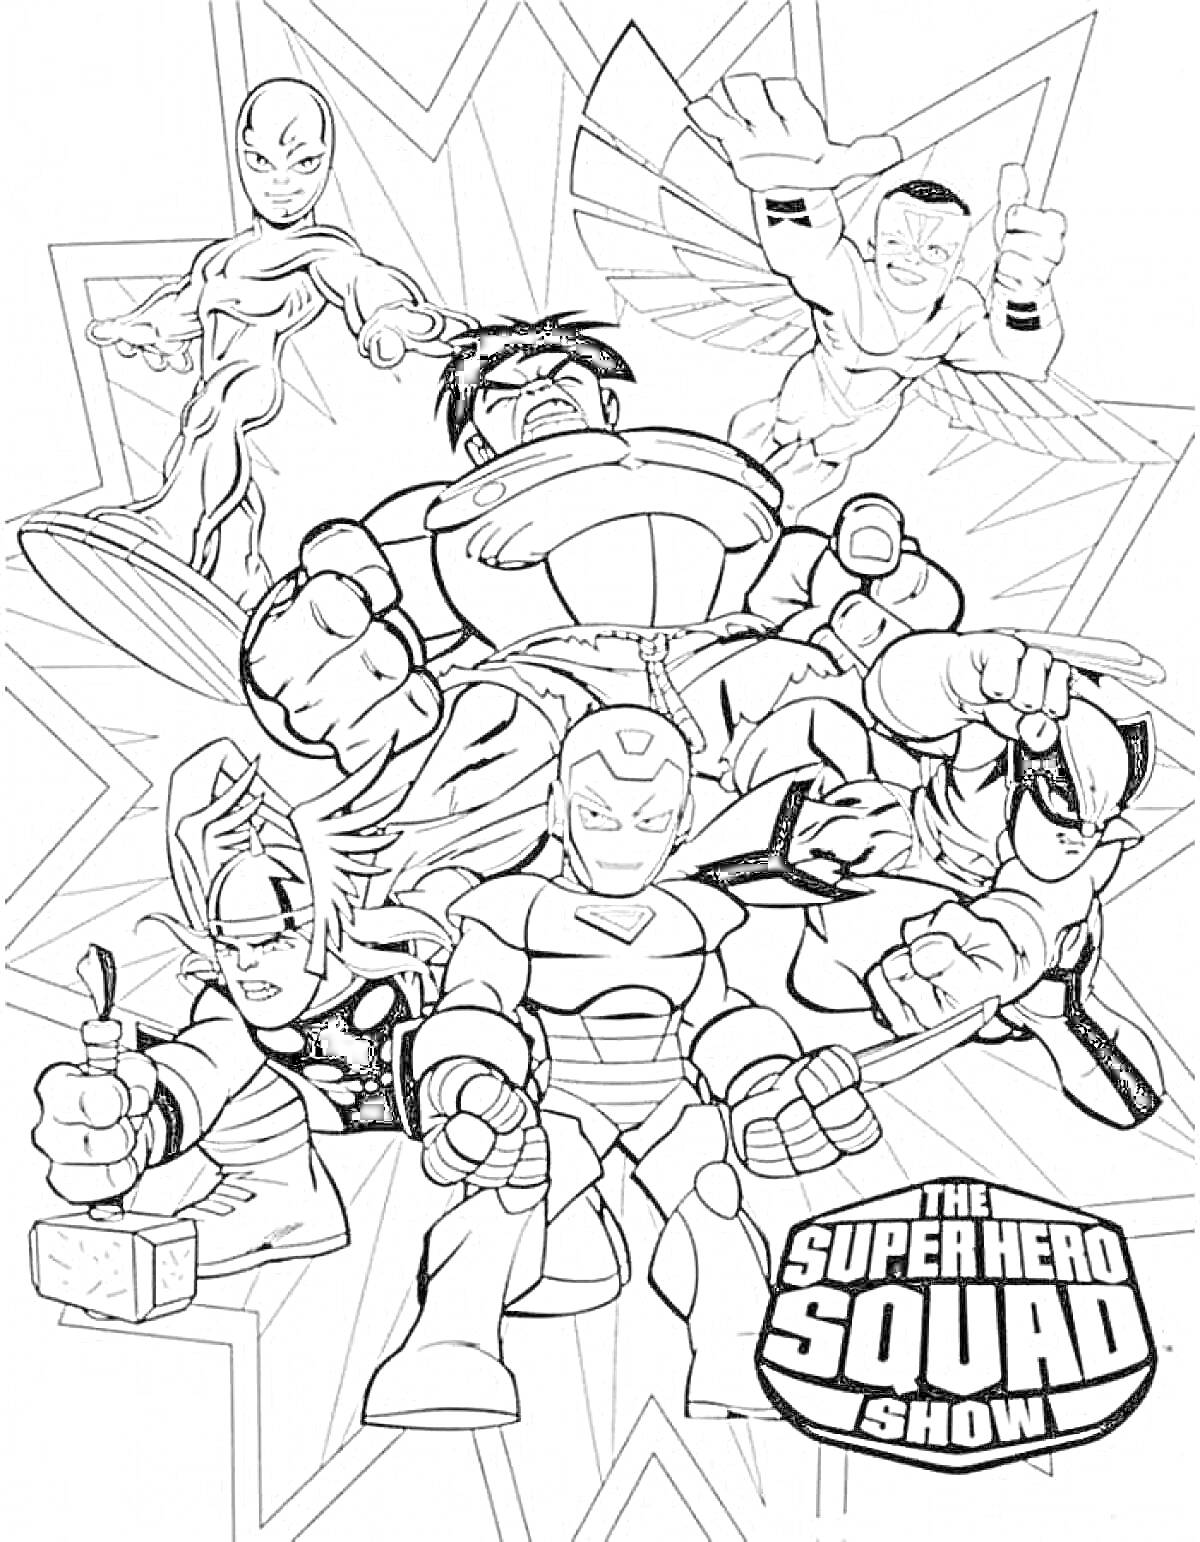 Марвел - Персонажи шоу Super Hero Squad (Серебряный Сёрфер, Халк, Сокол, Меченосец, Железный Человек и Росомаха)